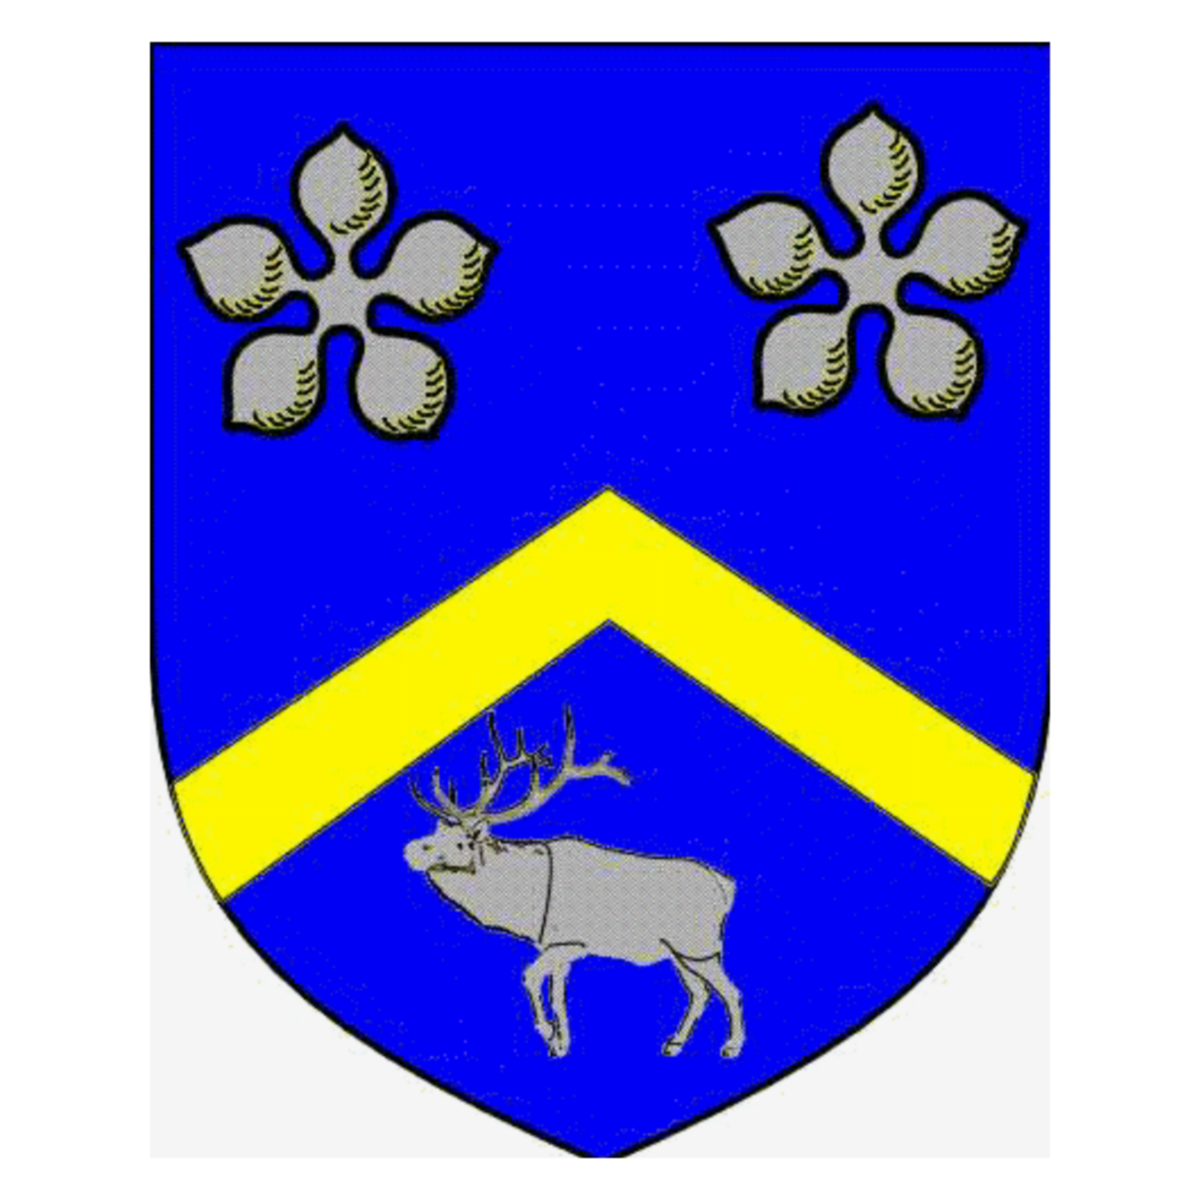 Wappen der Familie Canton